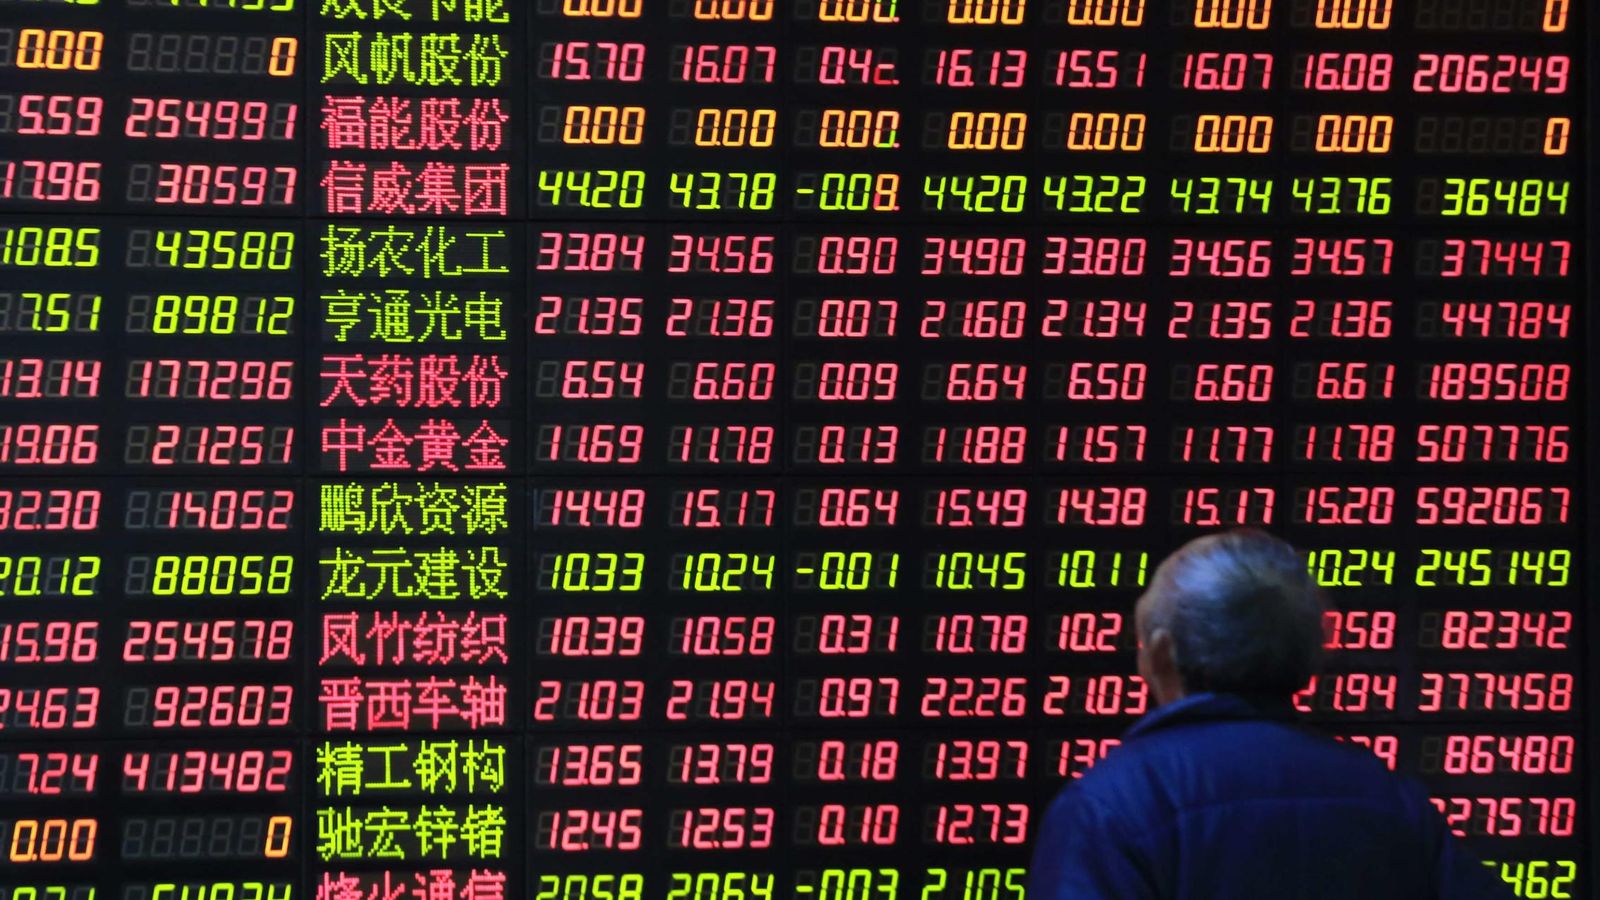 Foto: Según una investigación llevada a cabo por Capital Economics, el incremento anual del PIB chino estaría inflado entre uno y dos puntos porcentuales. (Reuters)